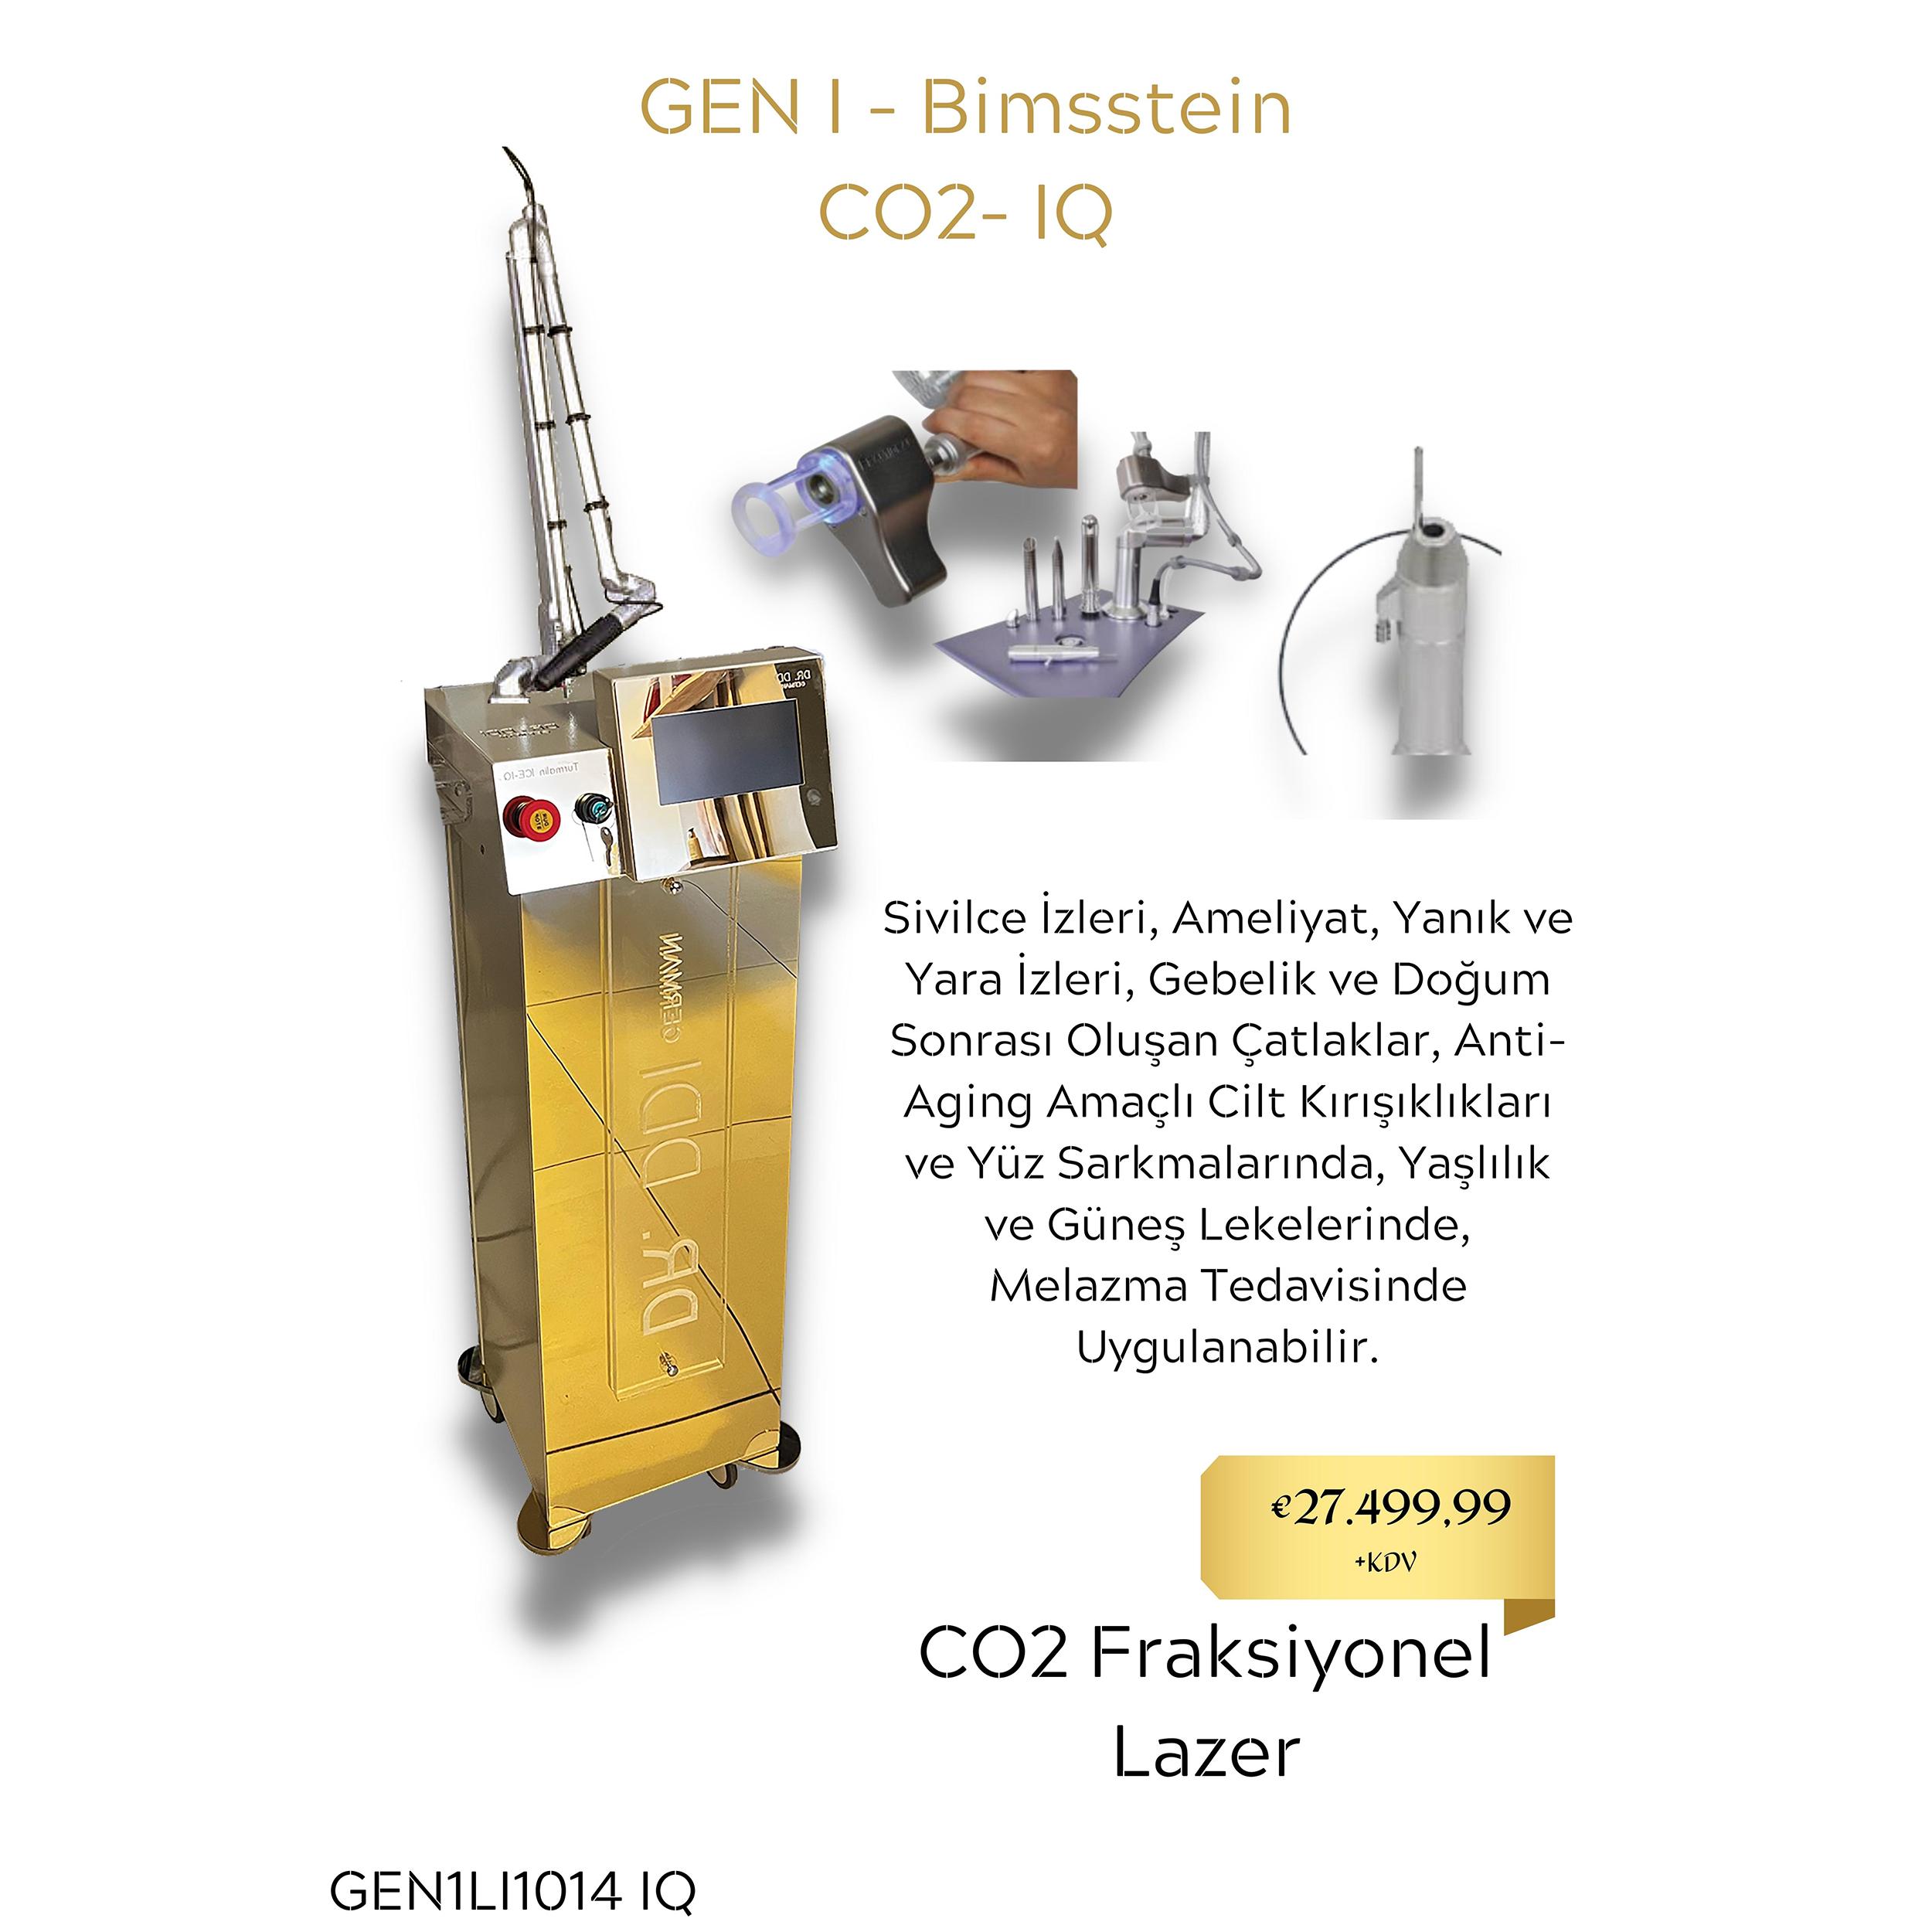 GEN I - Bimsstein CO2- IQ